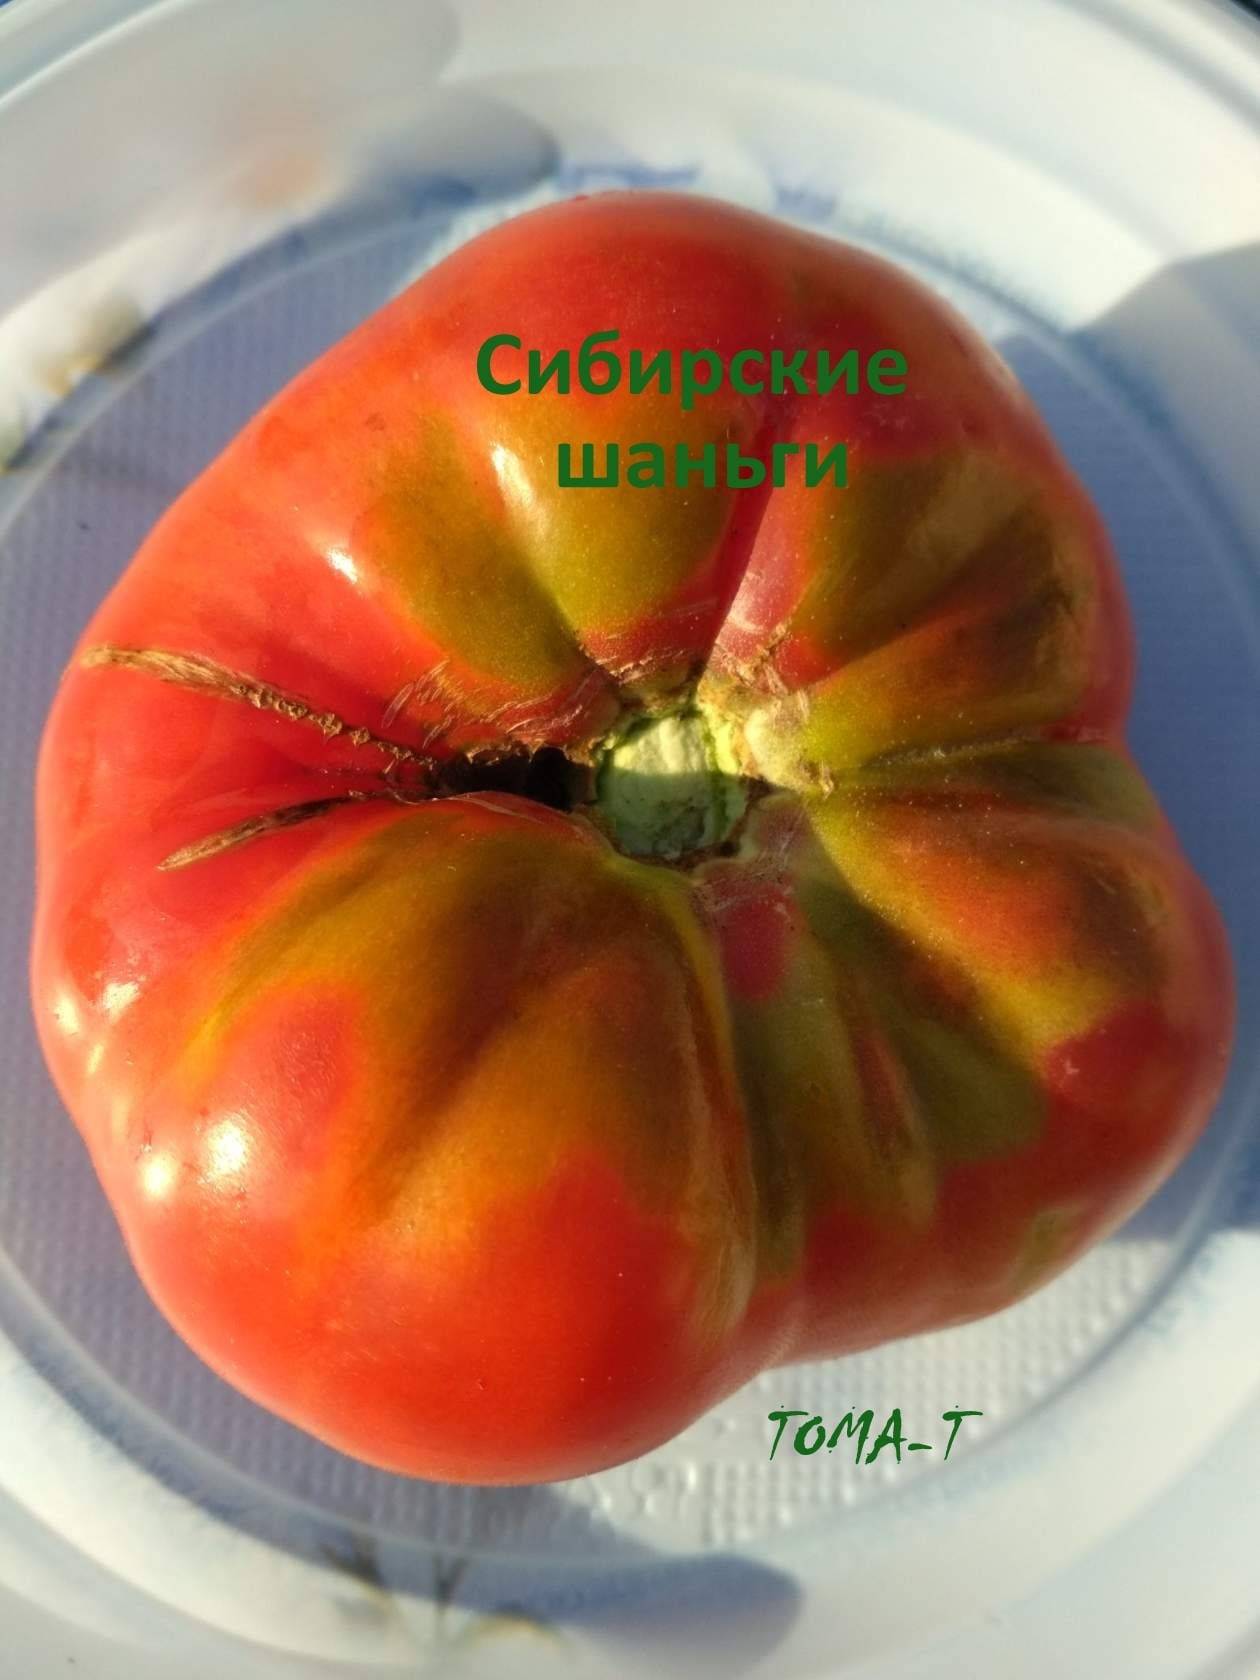 Описание крупноплодного сорта томата сибирские шаньги - все о фермерстве, растениях и урожае